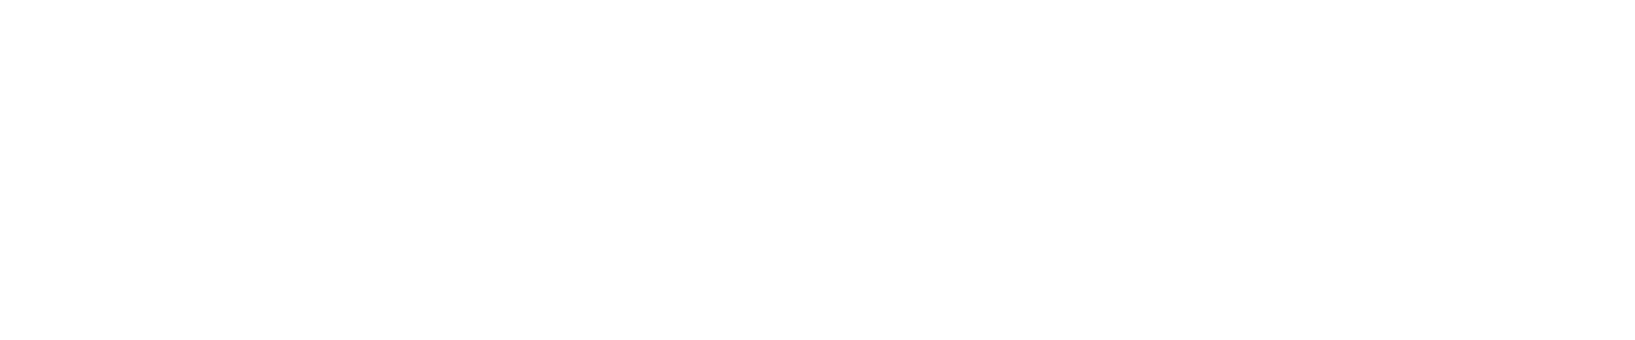 Markforged logo large for dark backgrounds (transparent PNG)